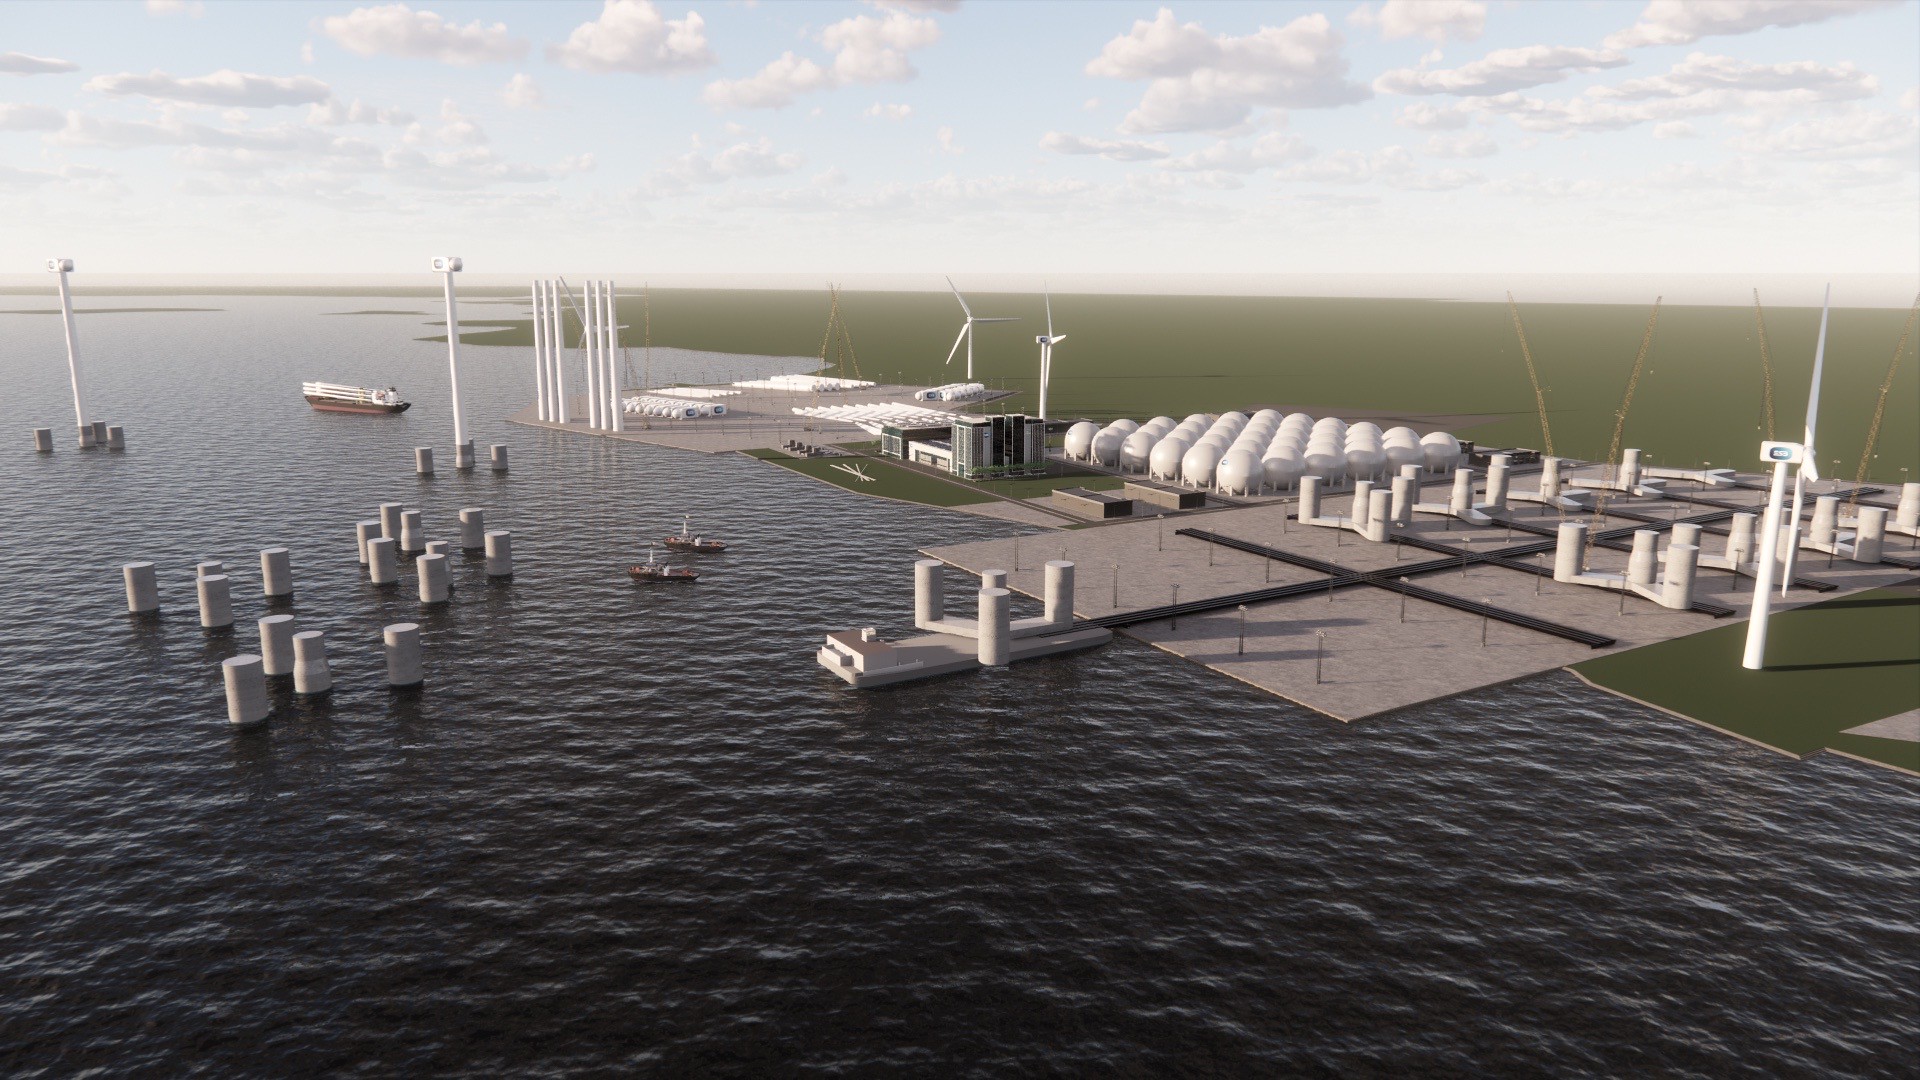 Ireland to Get 1.4 GW Floating Wind Farm, Green Hub